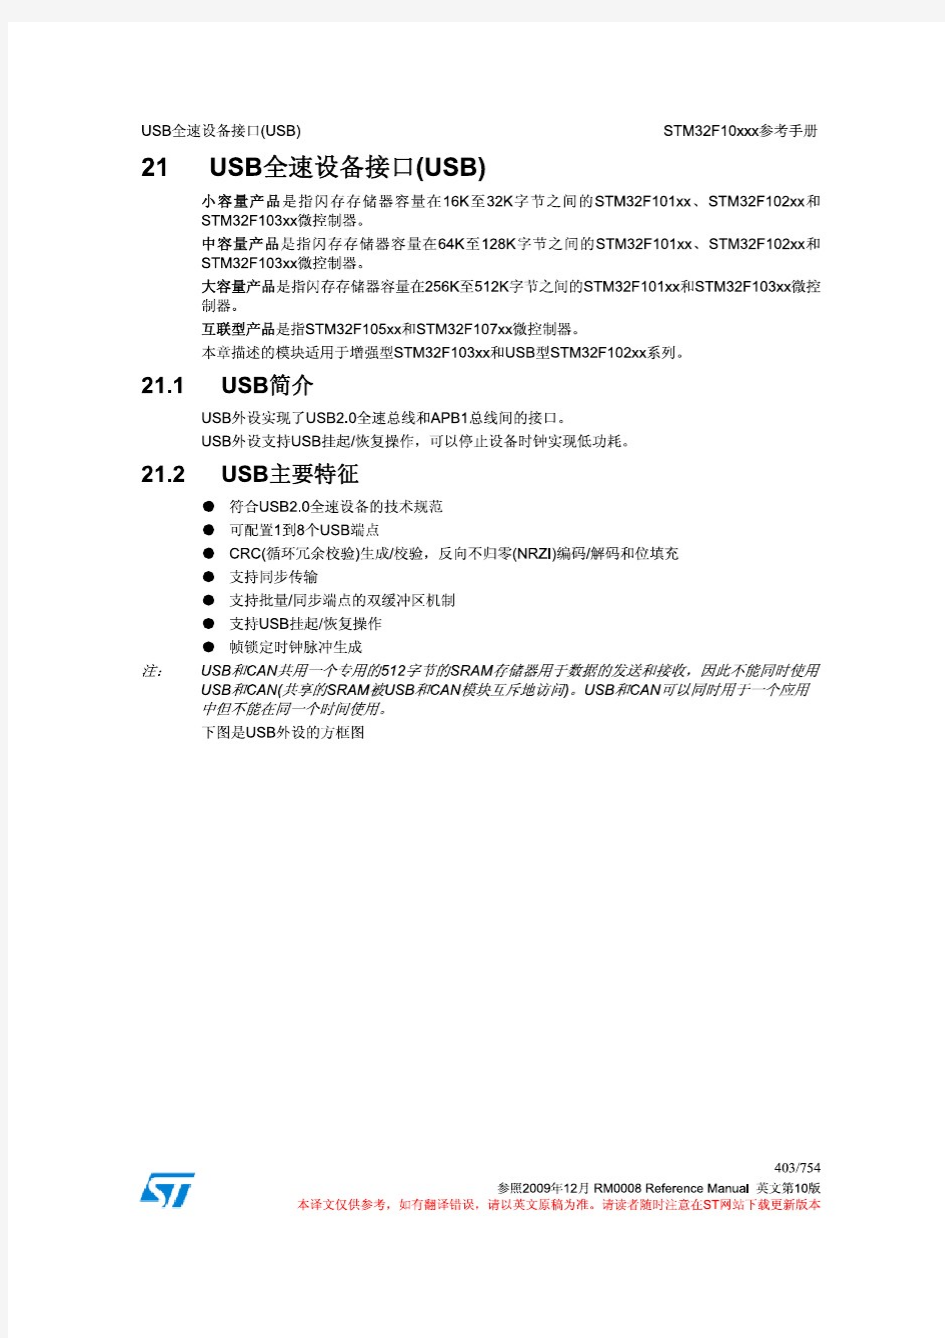 《STM32技术参考手册中文翻译第10版》USB部分